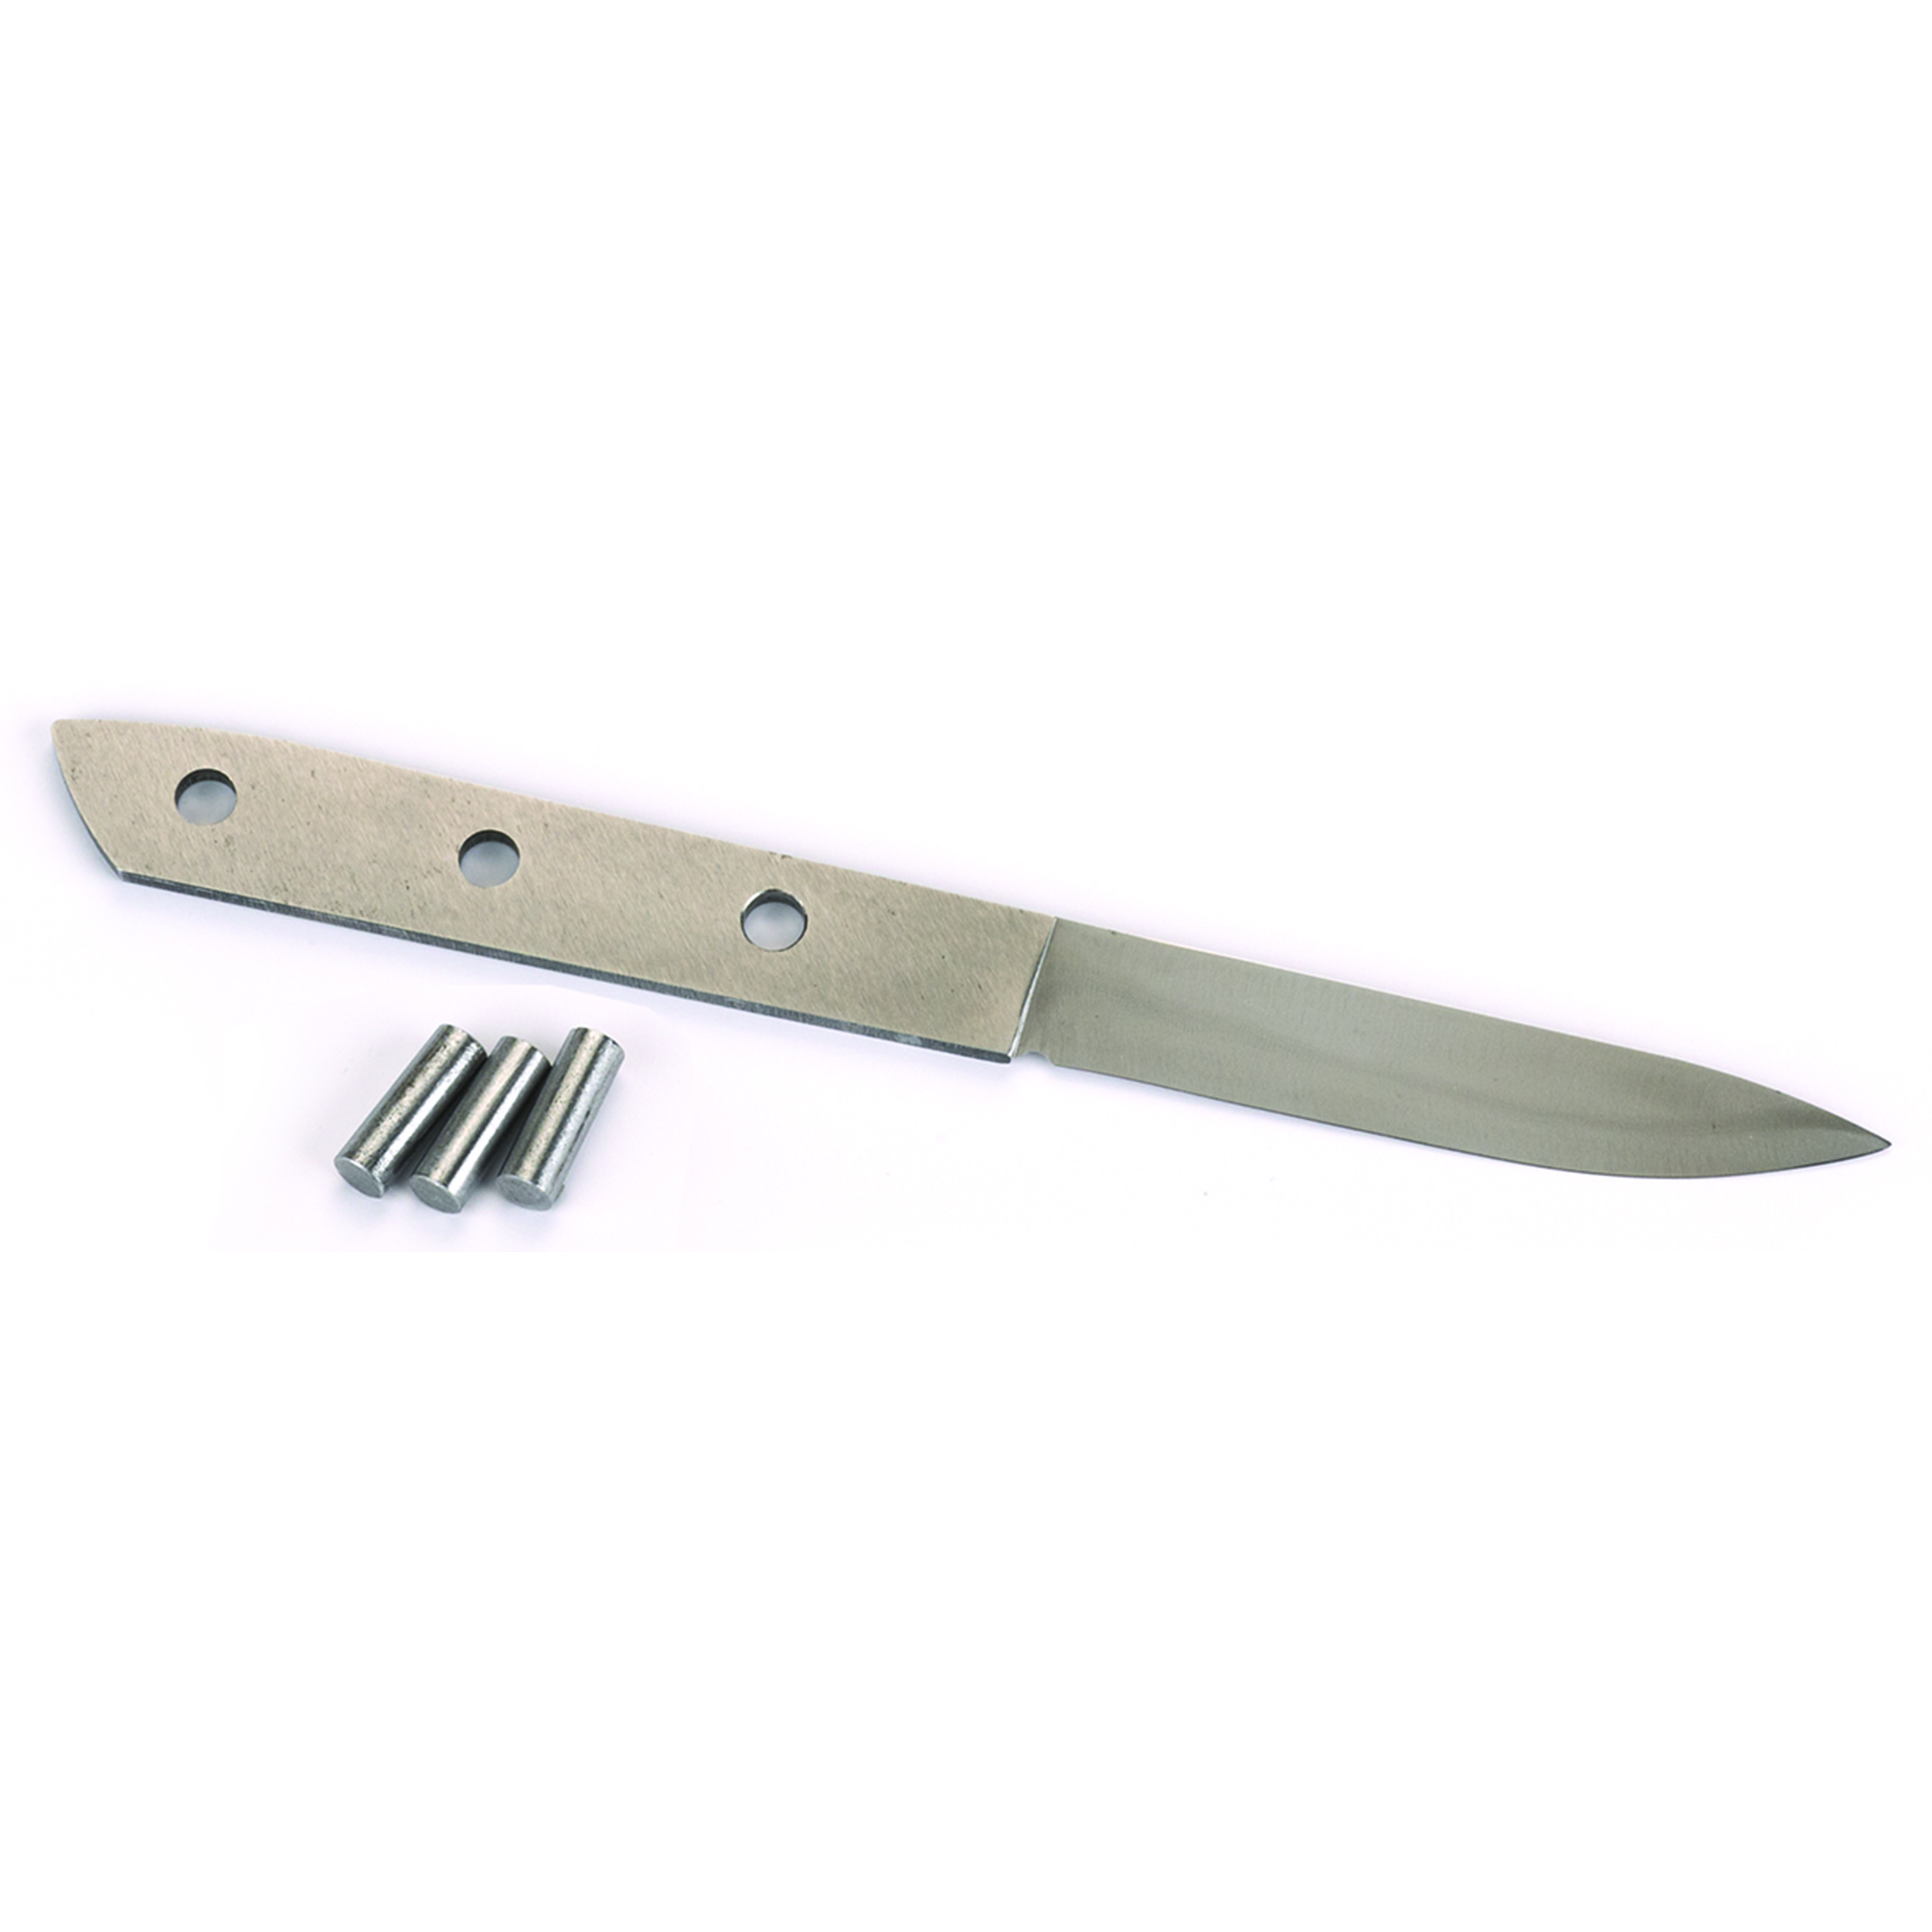 Tools 3-1/2" Paring Knife Kit